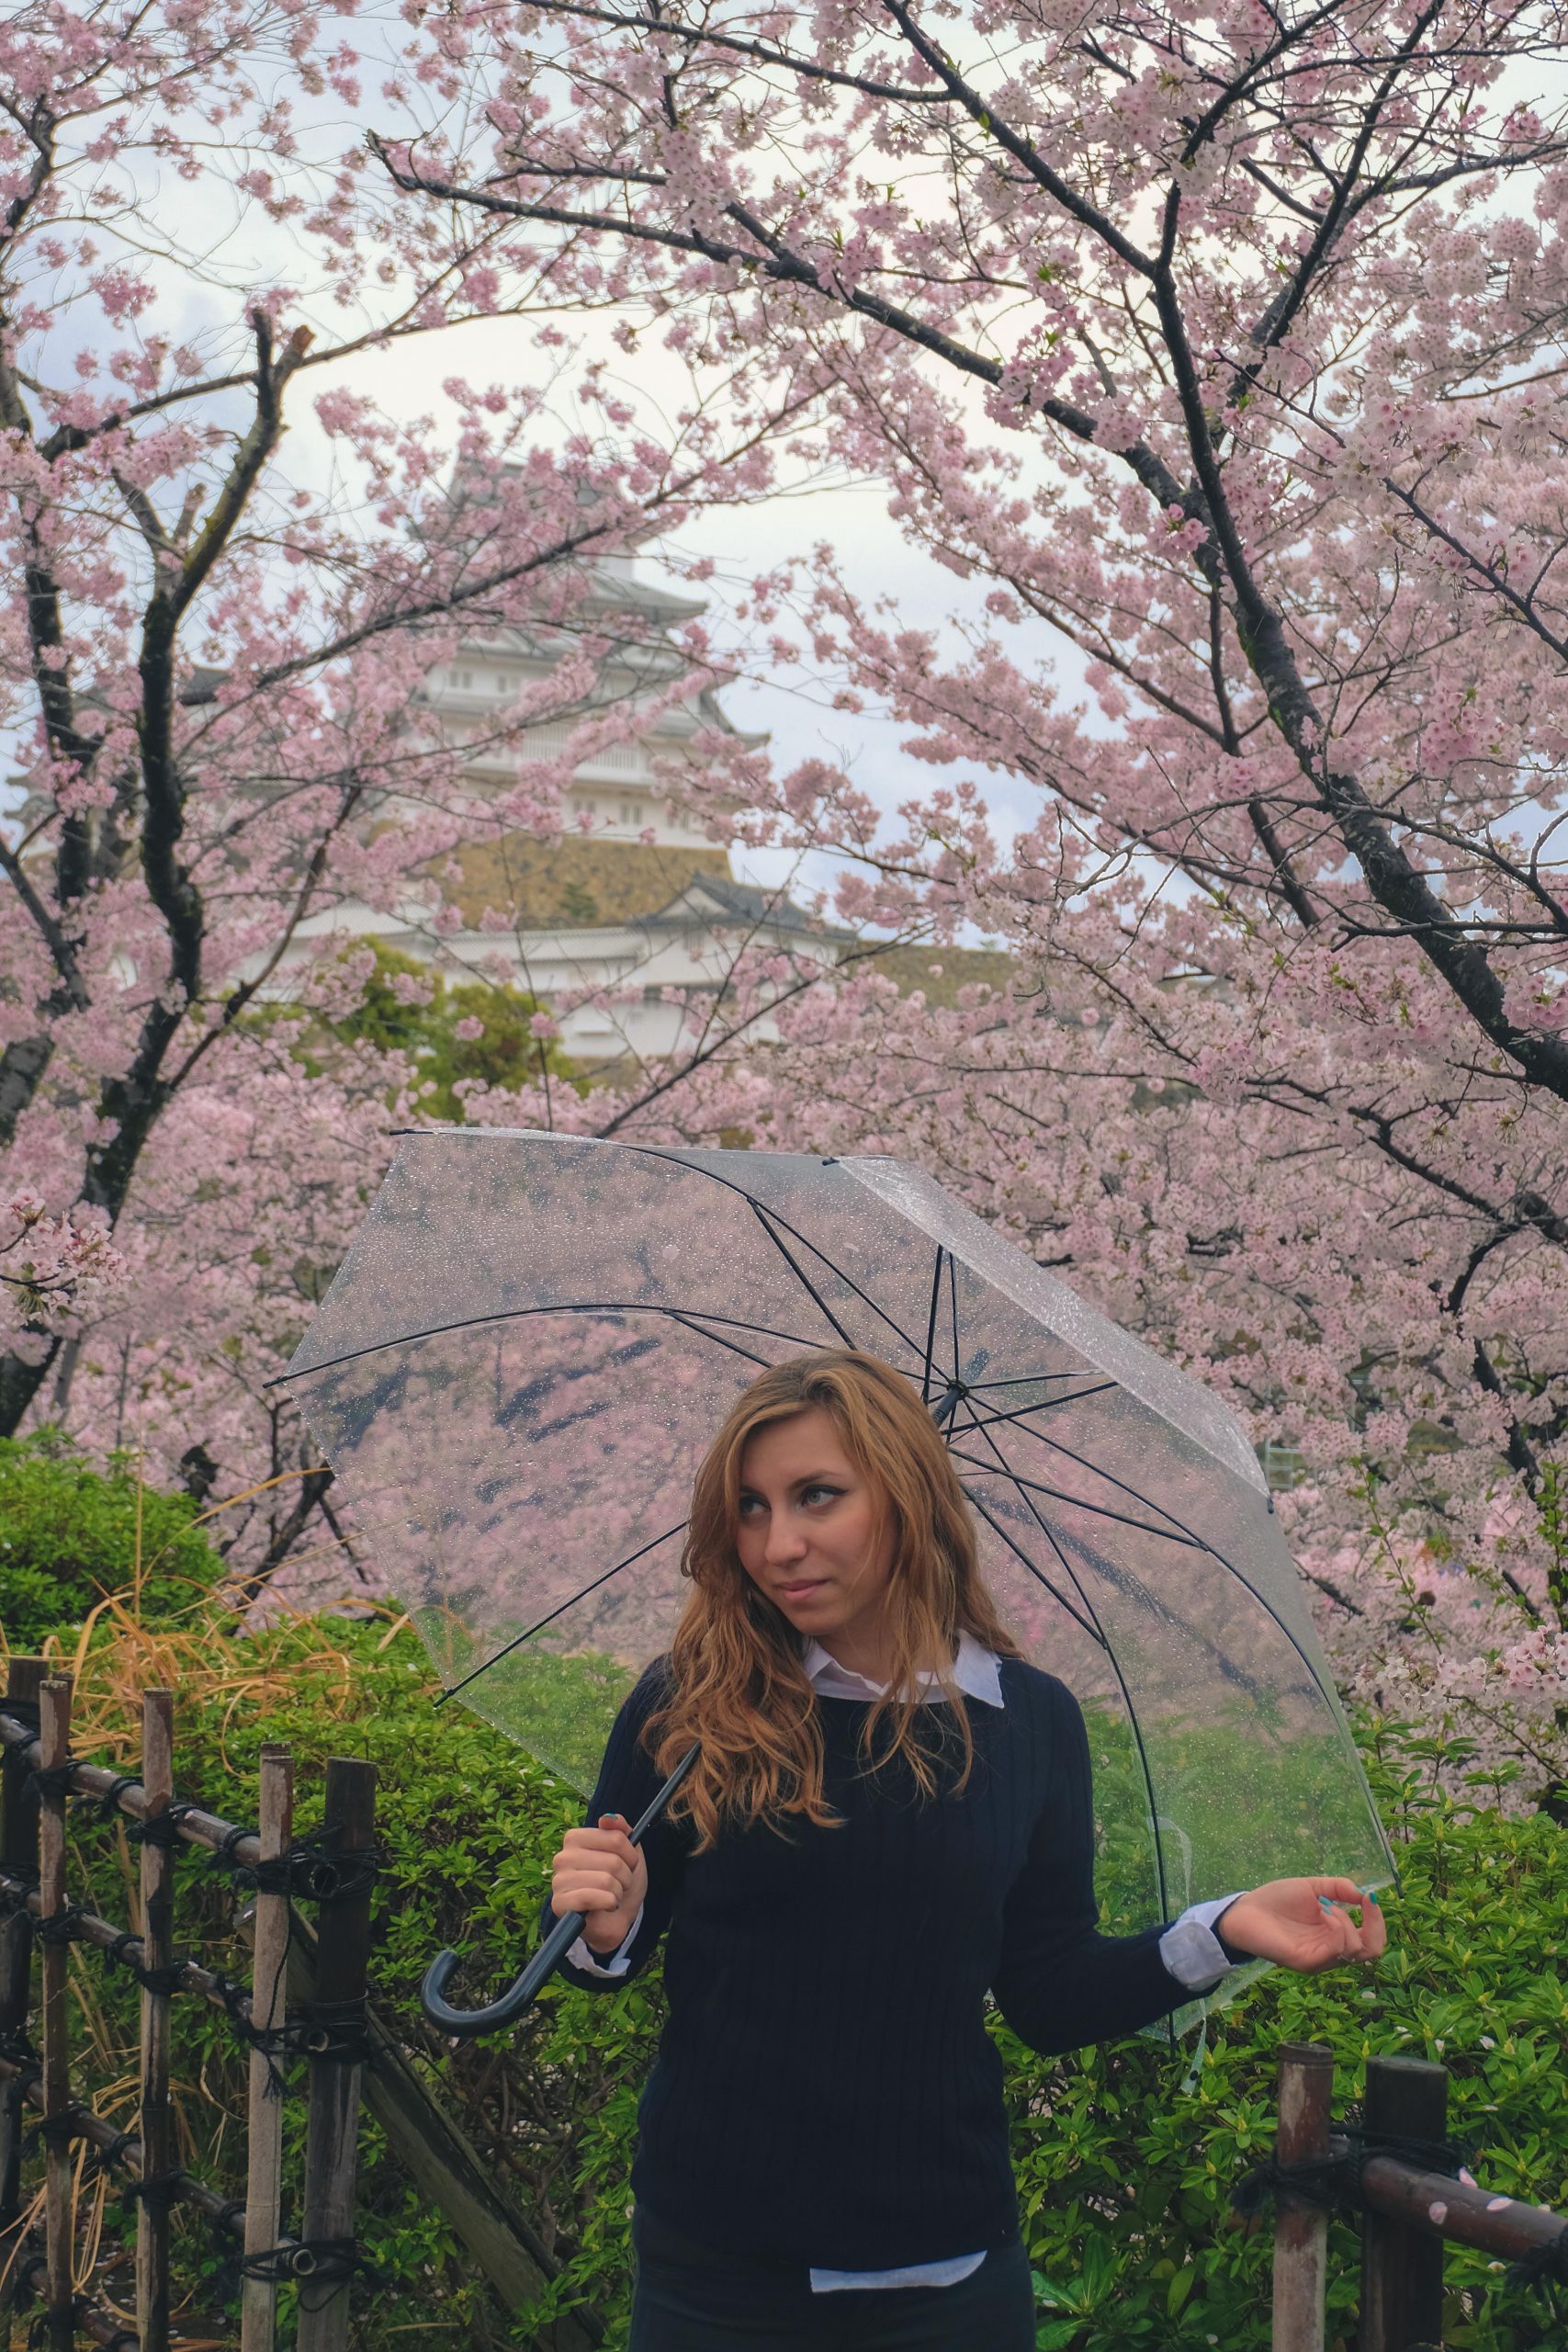 Cory enjoying her time in Himeji during the sakura season